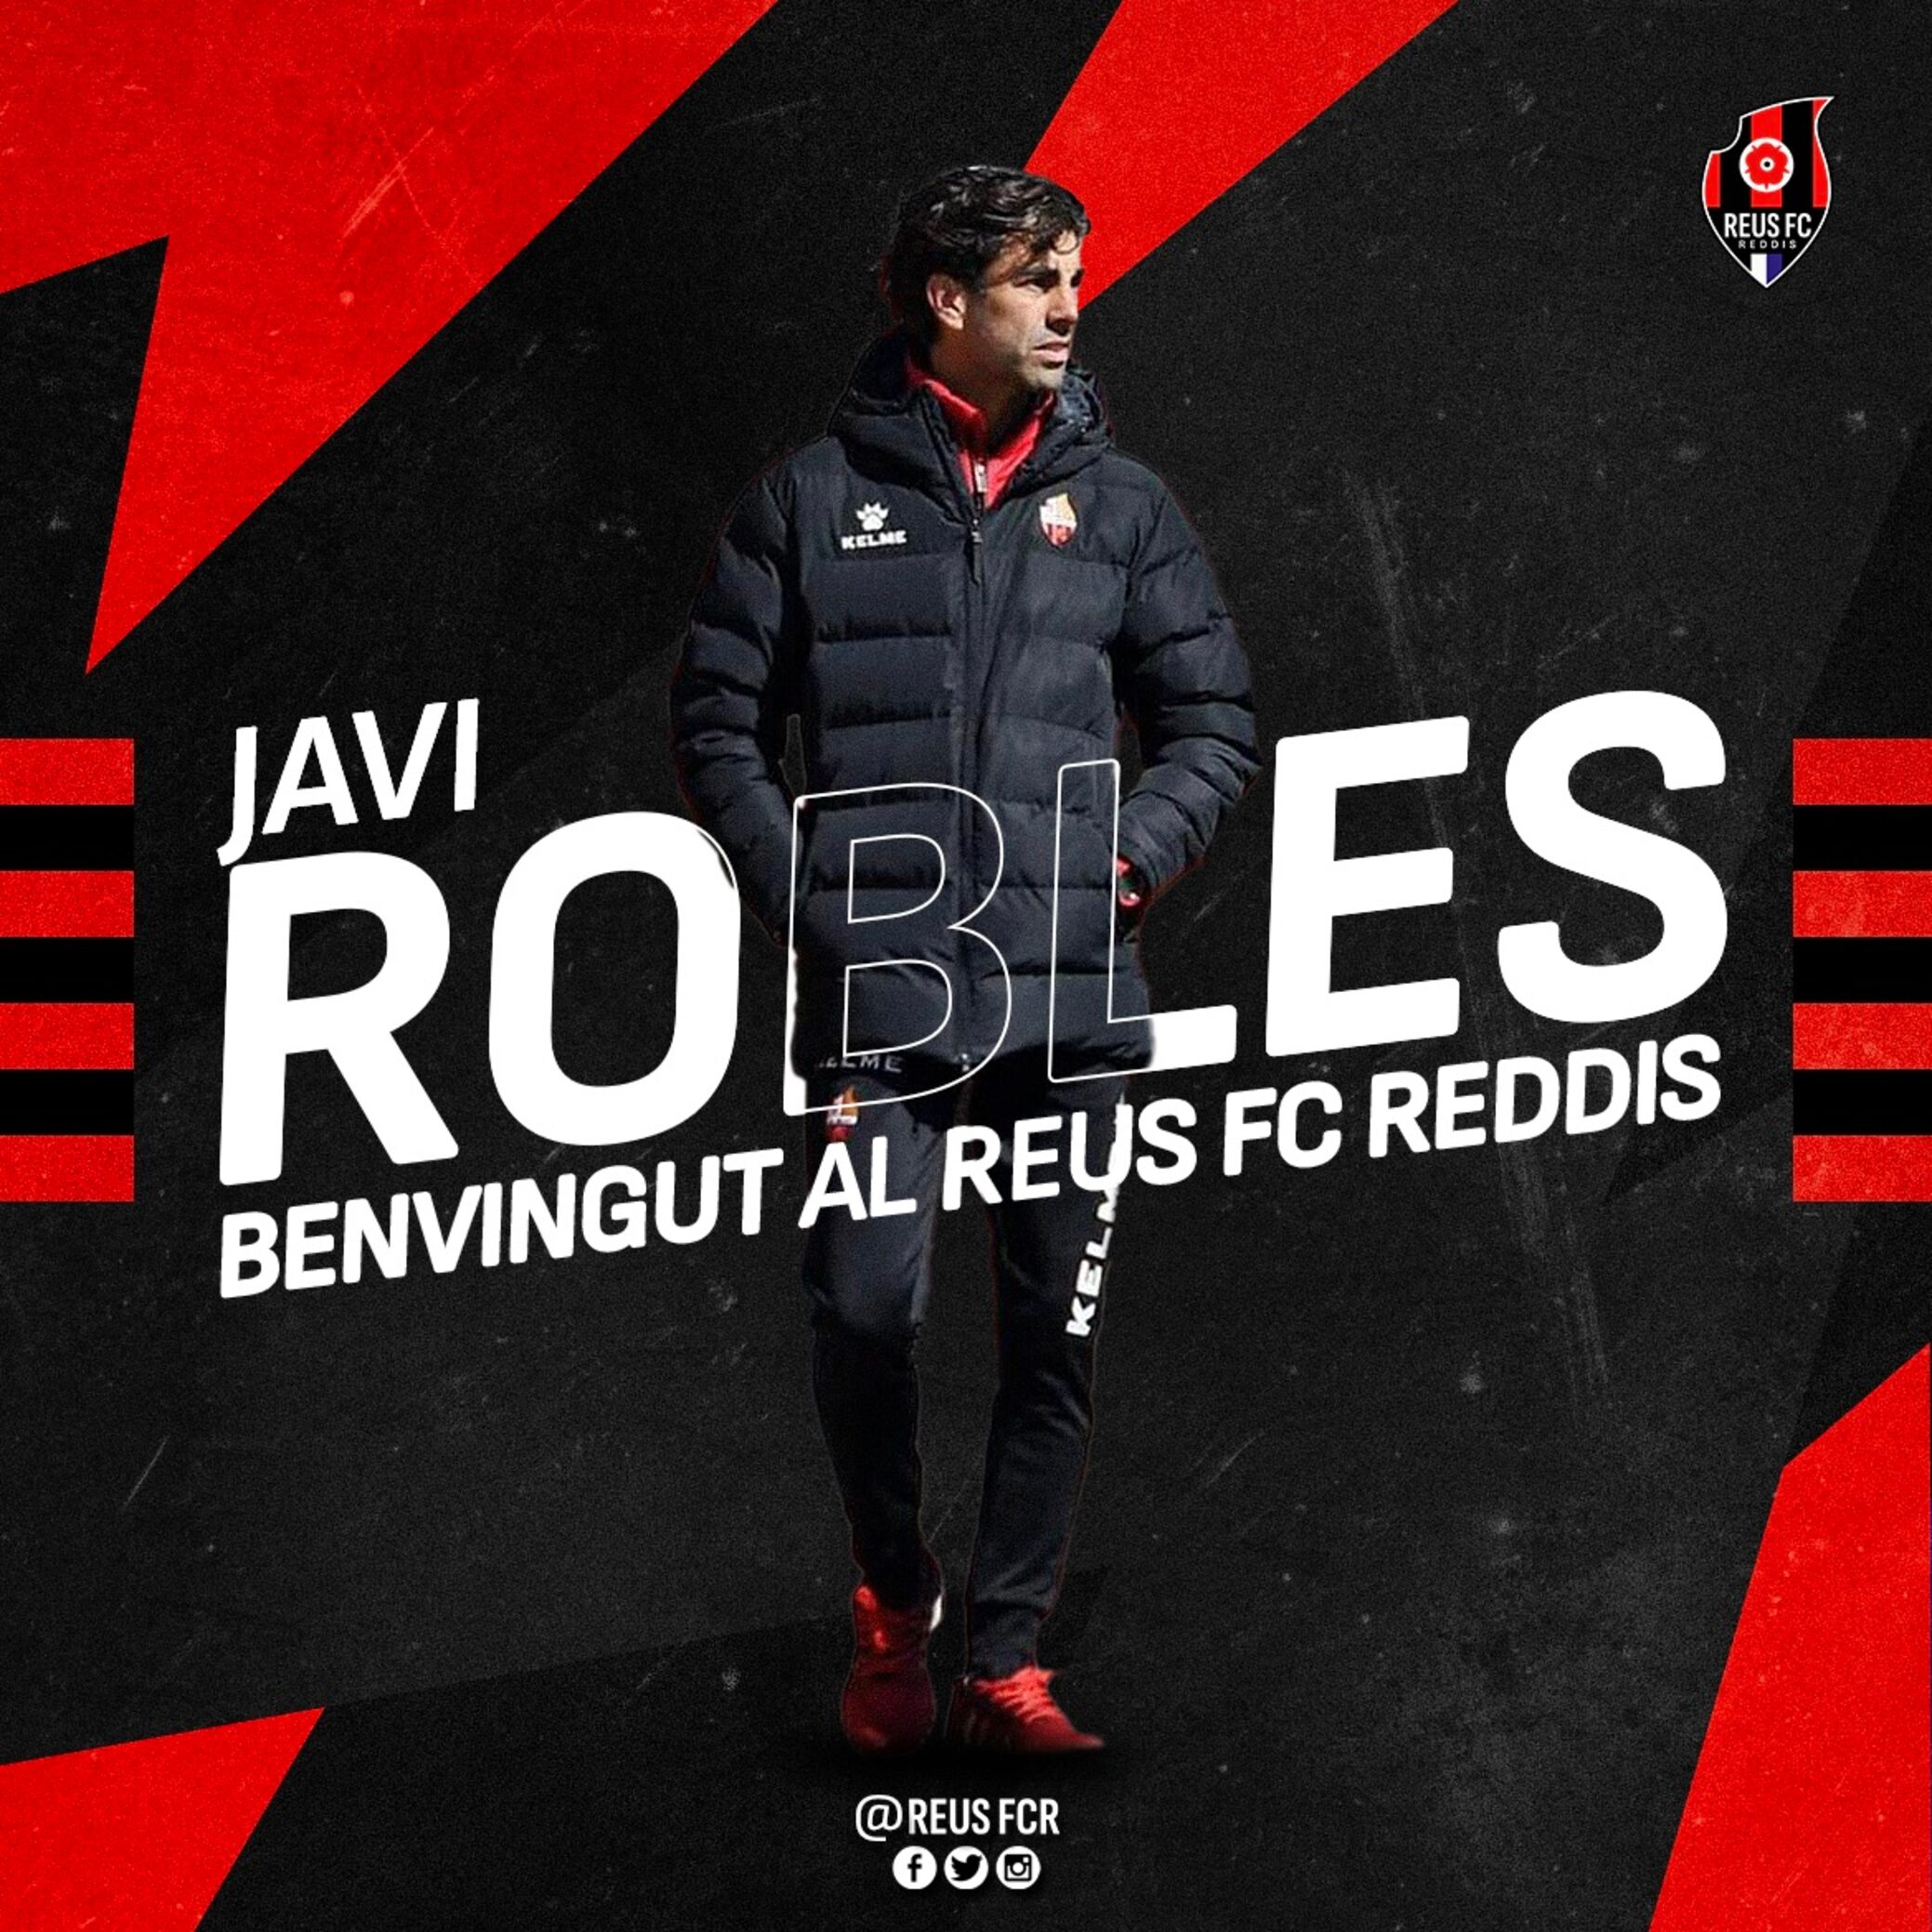 Javi Robles nou segon entrenador del Reus FC Reddis